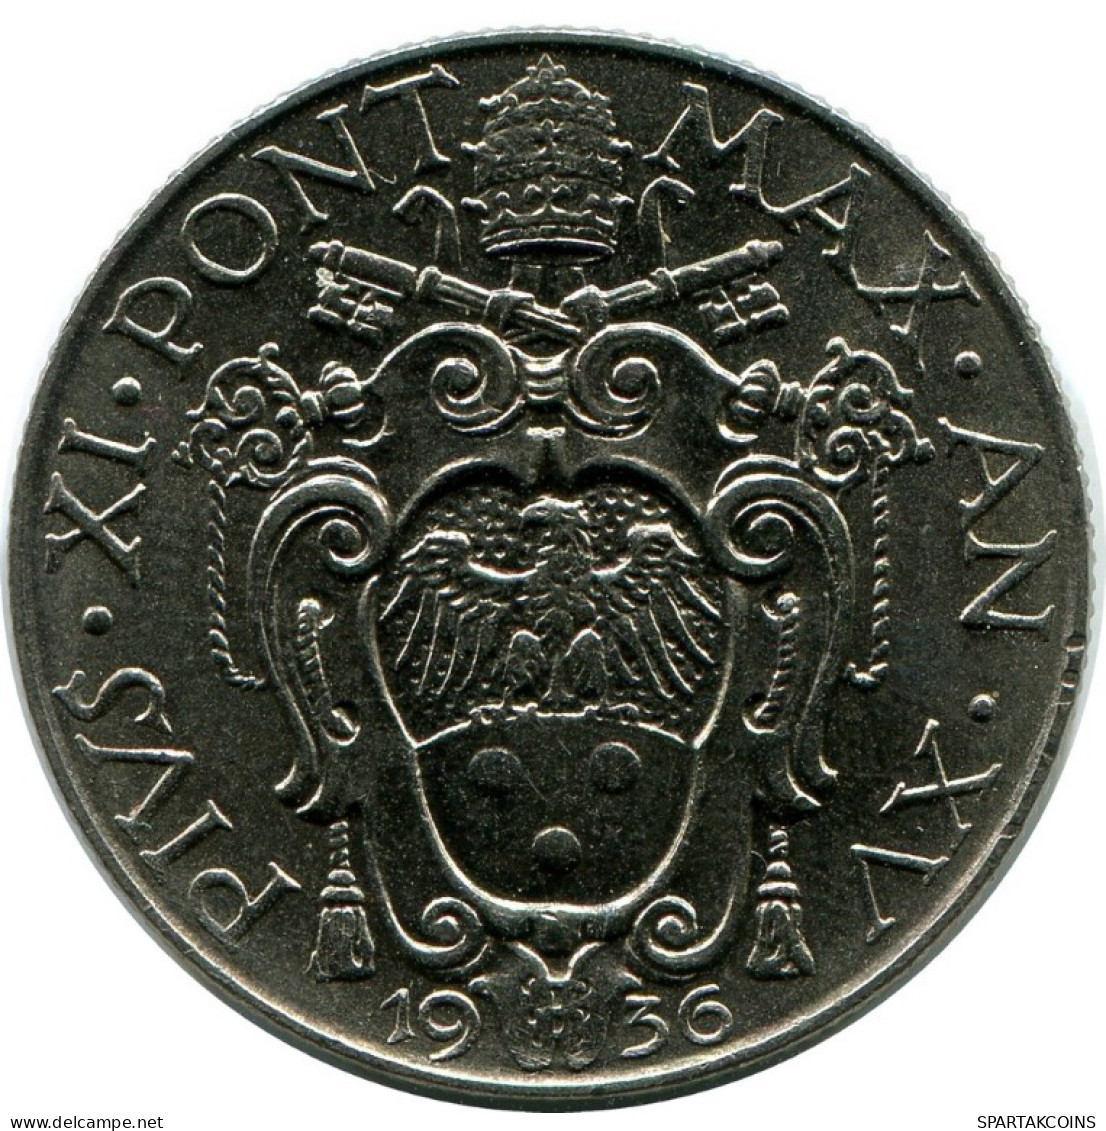 1 LIRE 1936 VATICAN Coin Pius XI (1922-1939) #AH309.16.U.A - Vatican